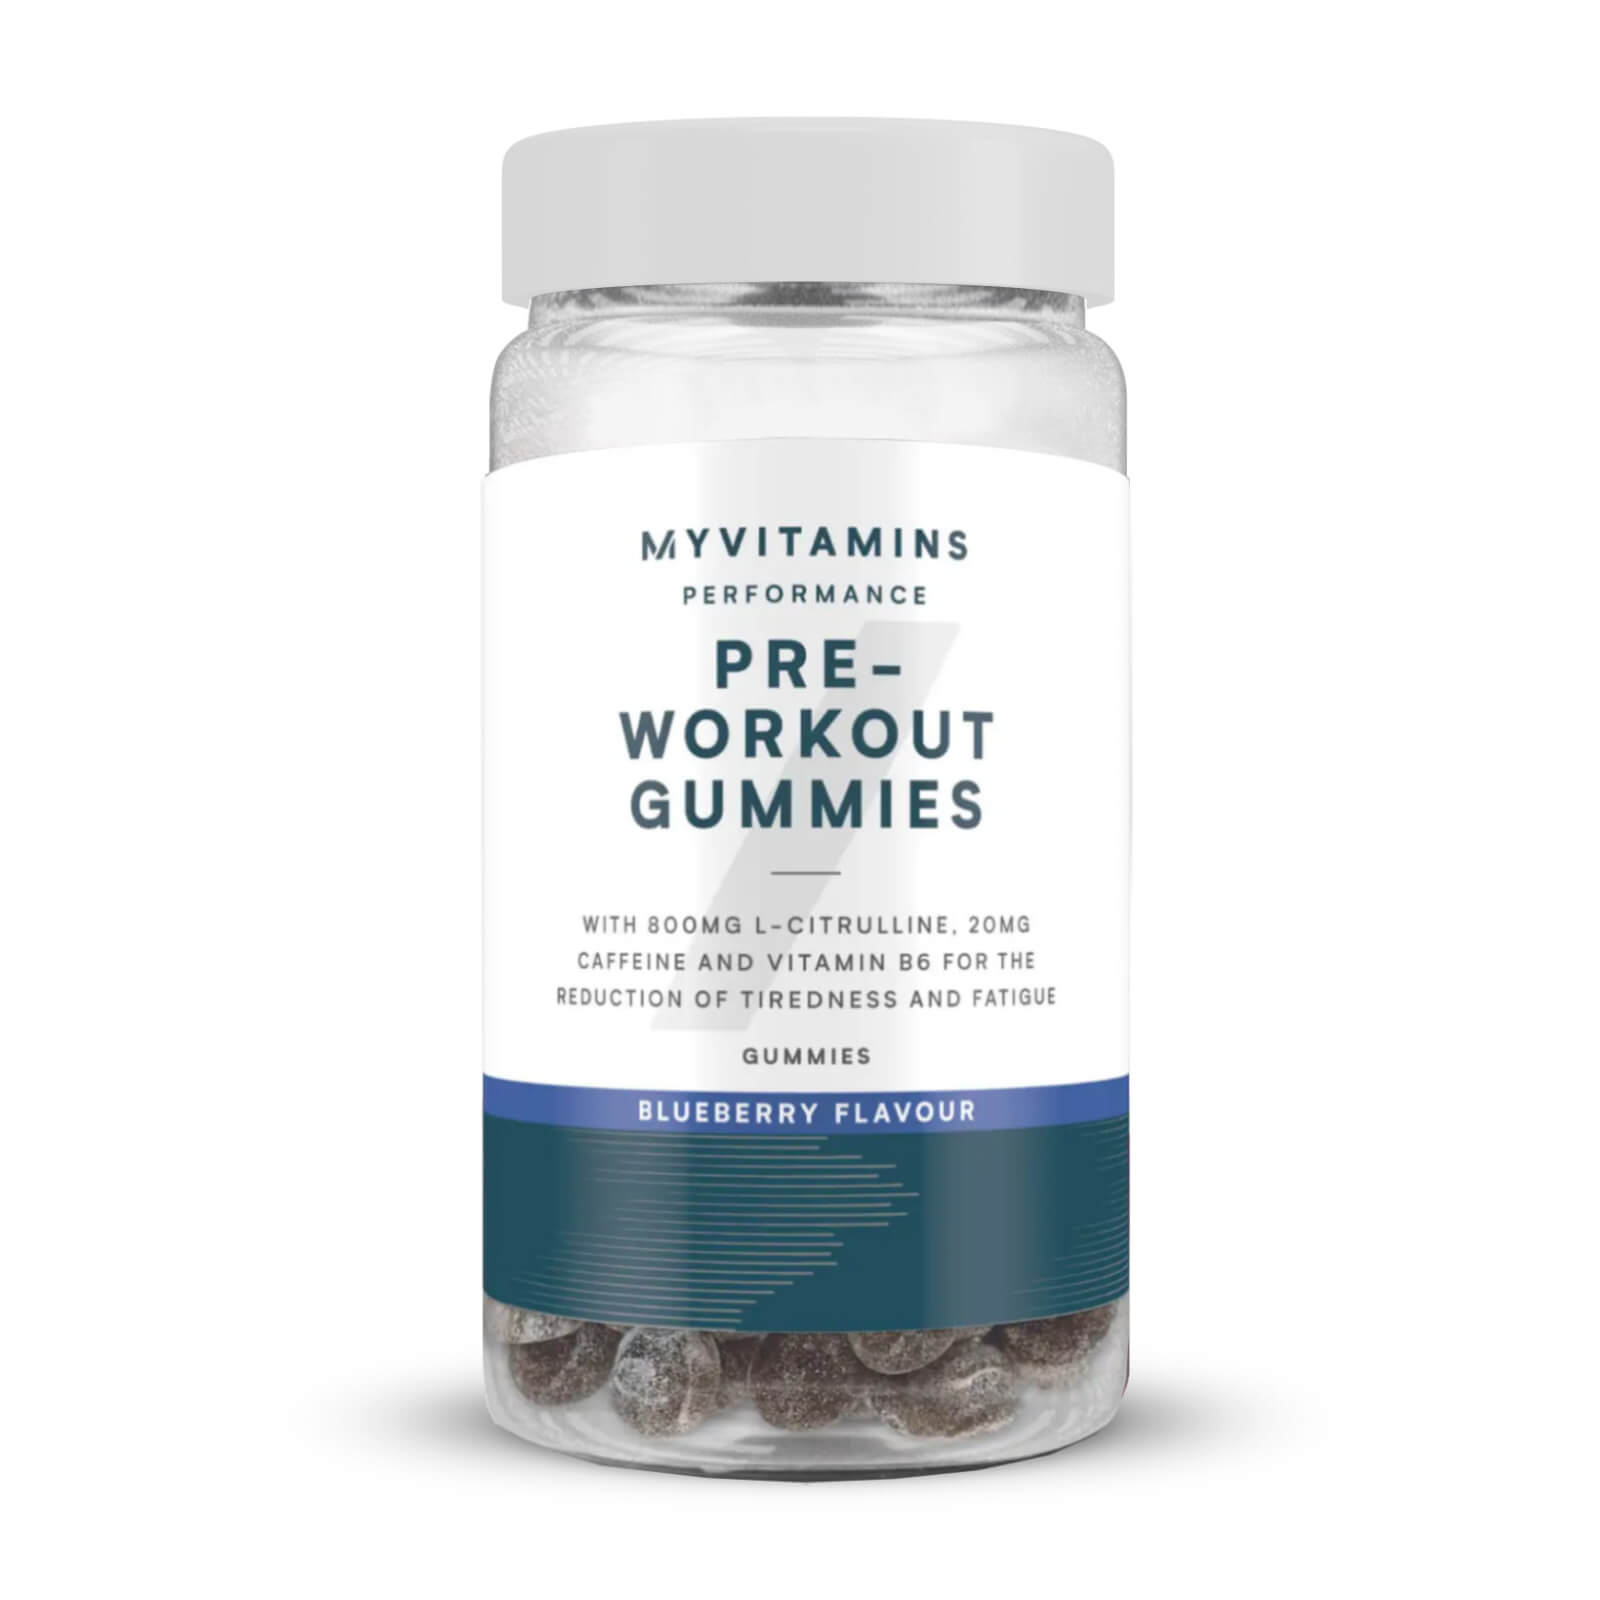 Myvitamins Pre Workout Gummies - 60 Gummies - Blueberry